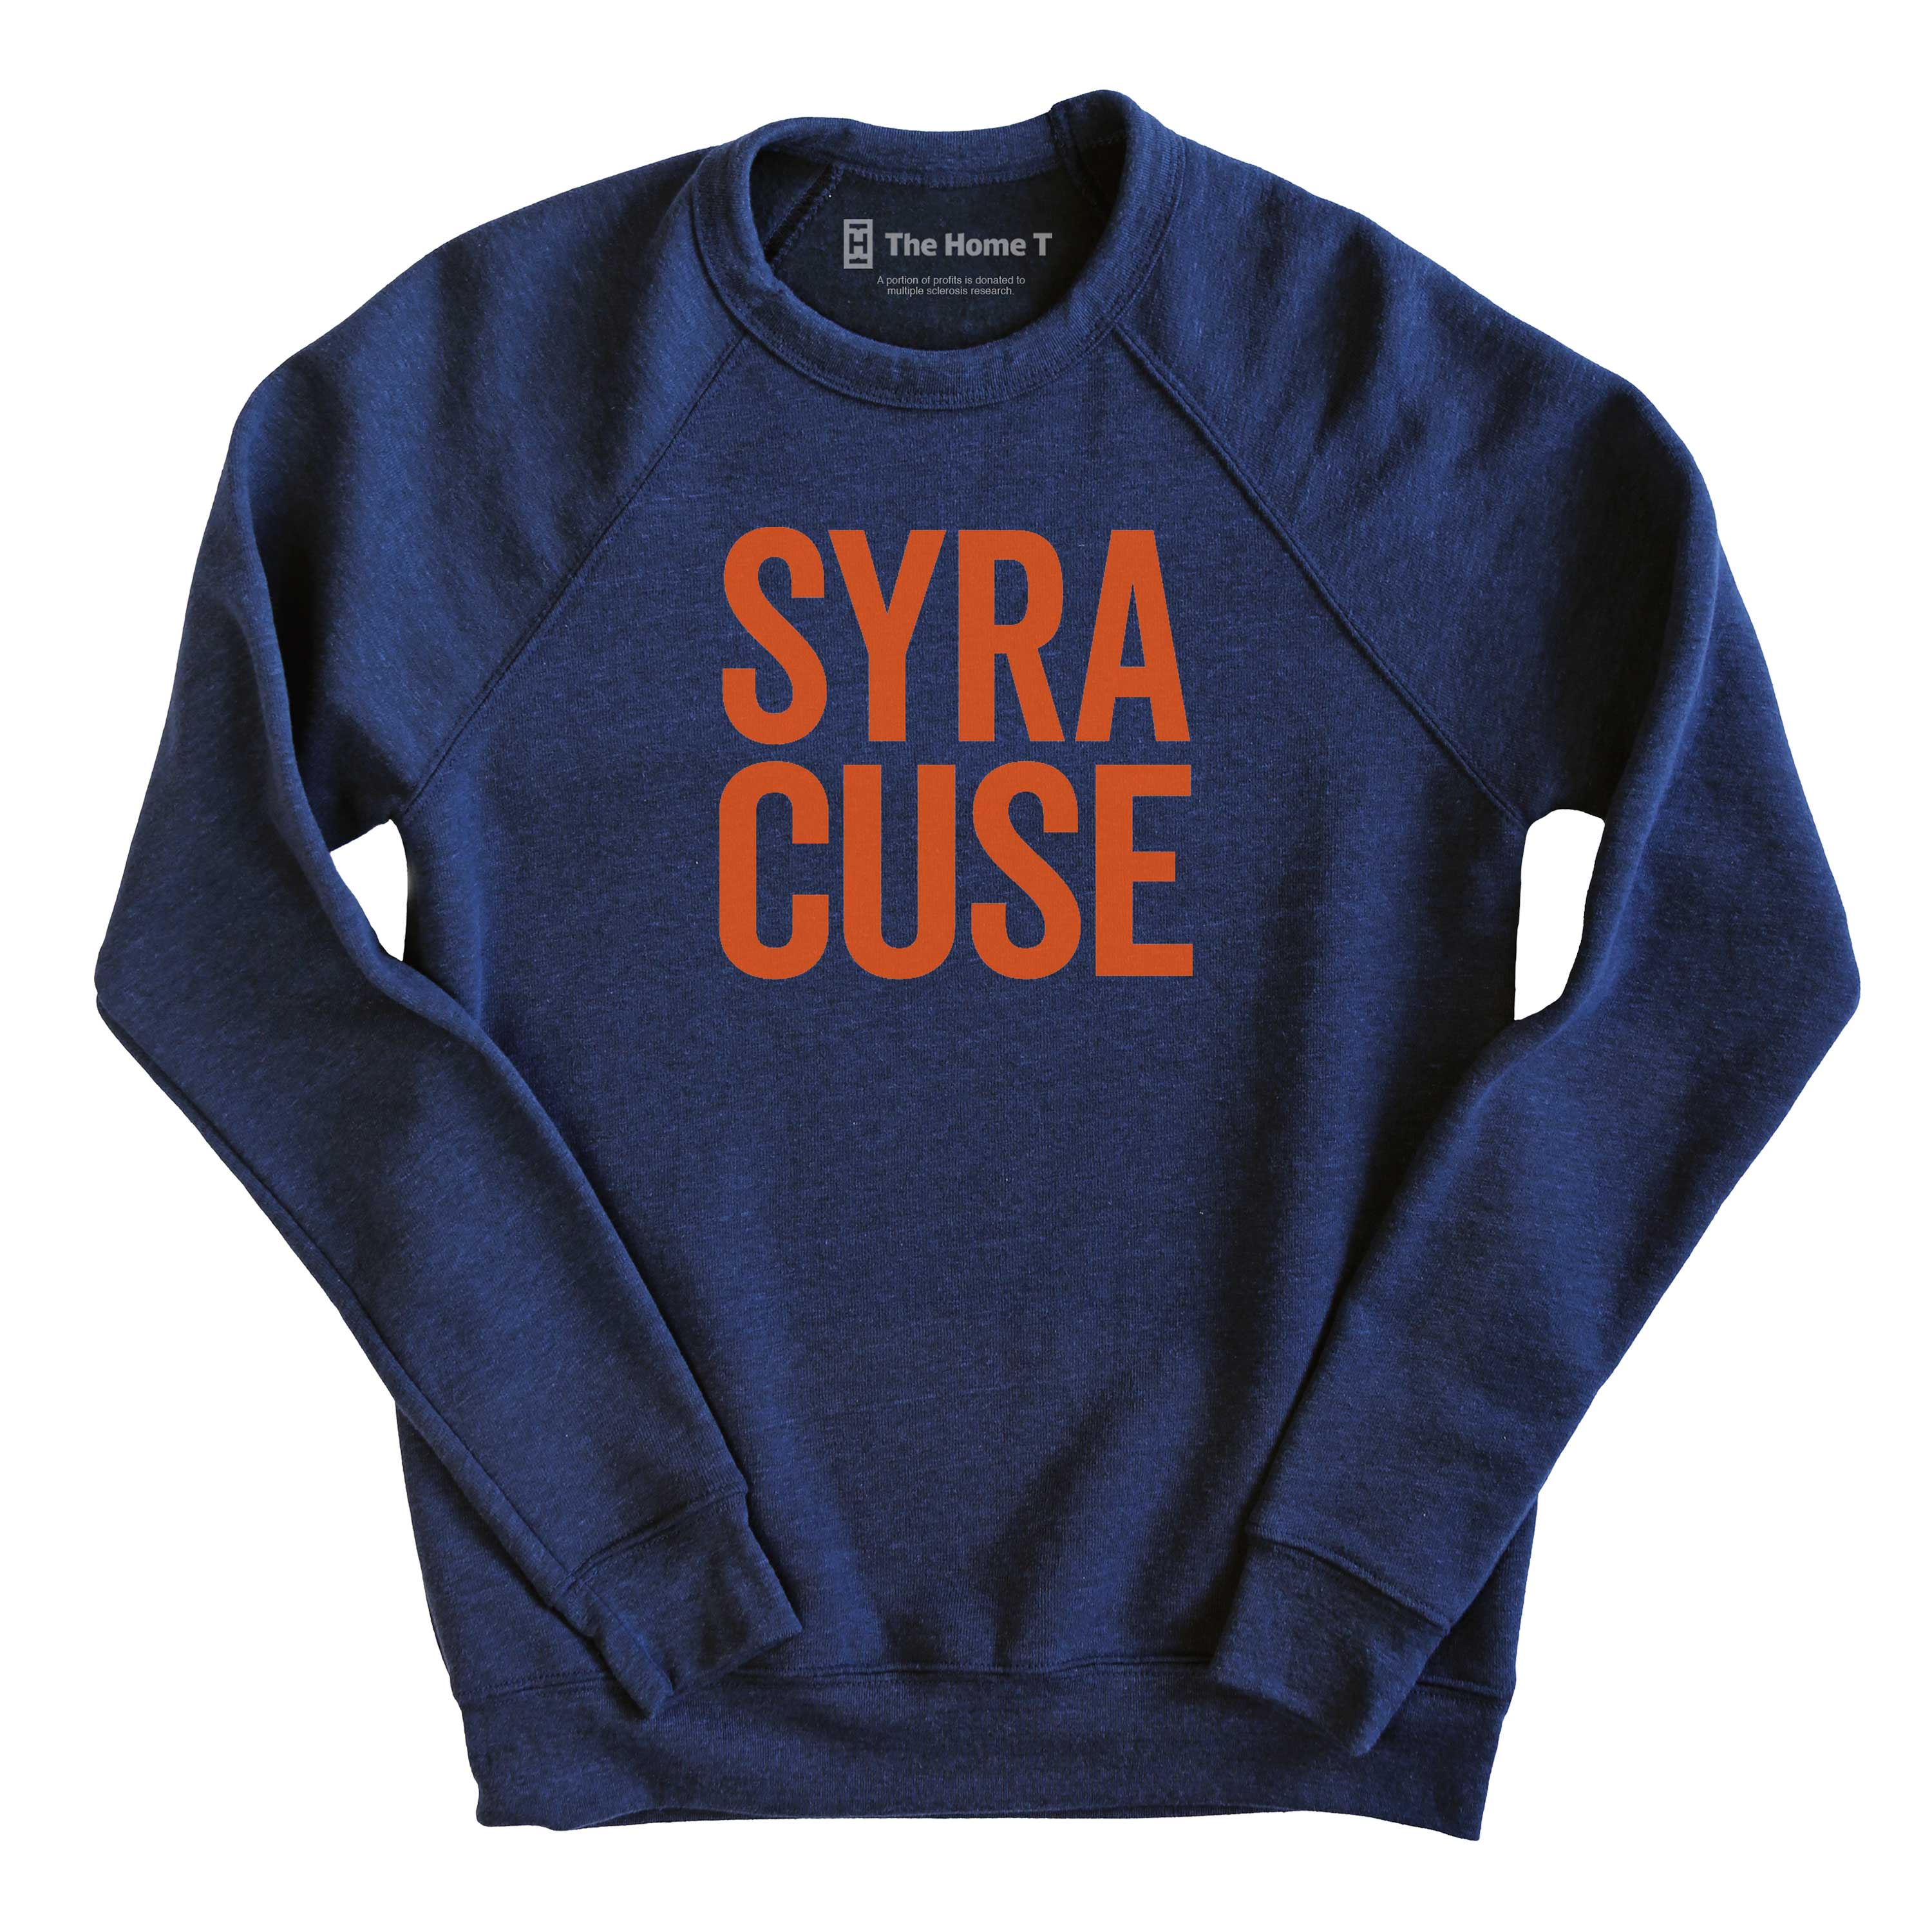 Syracuse Crew neck The Home T XS Sweatshirt